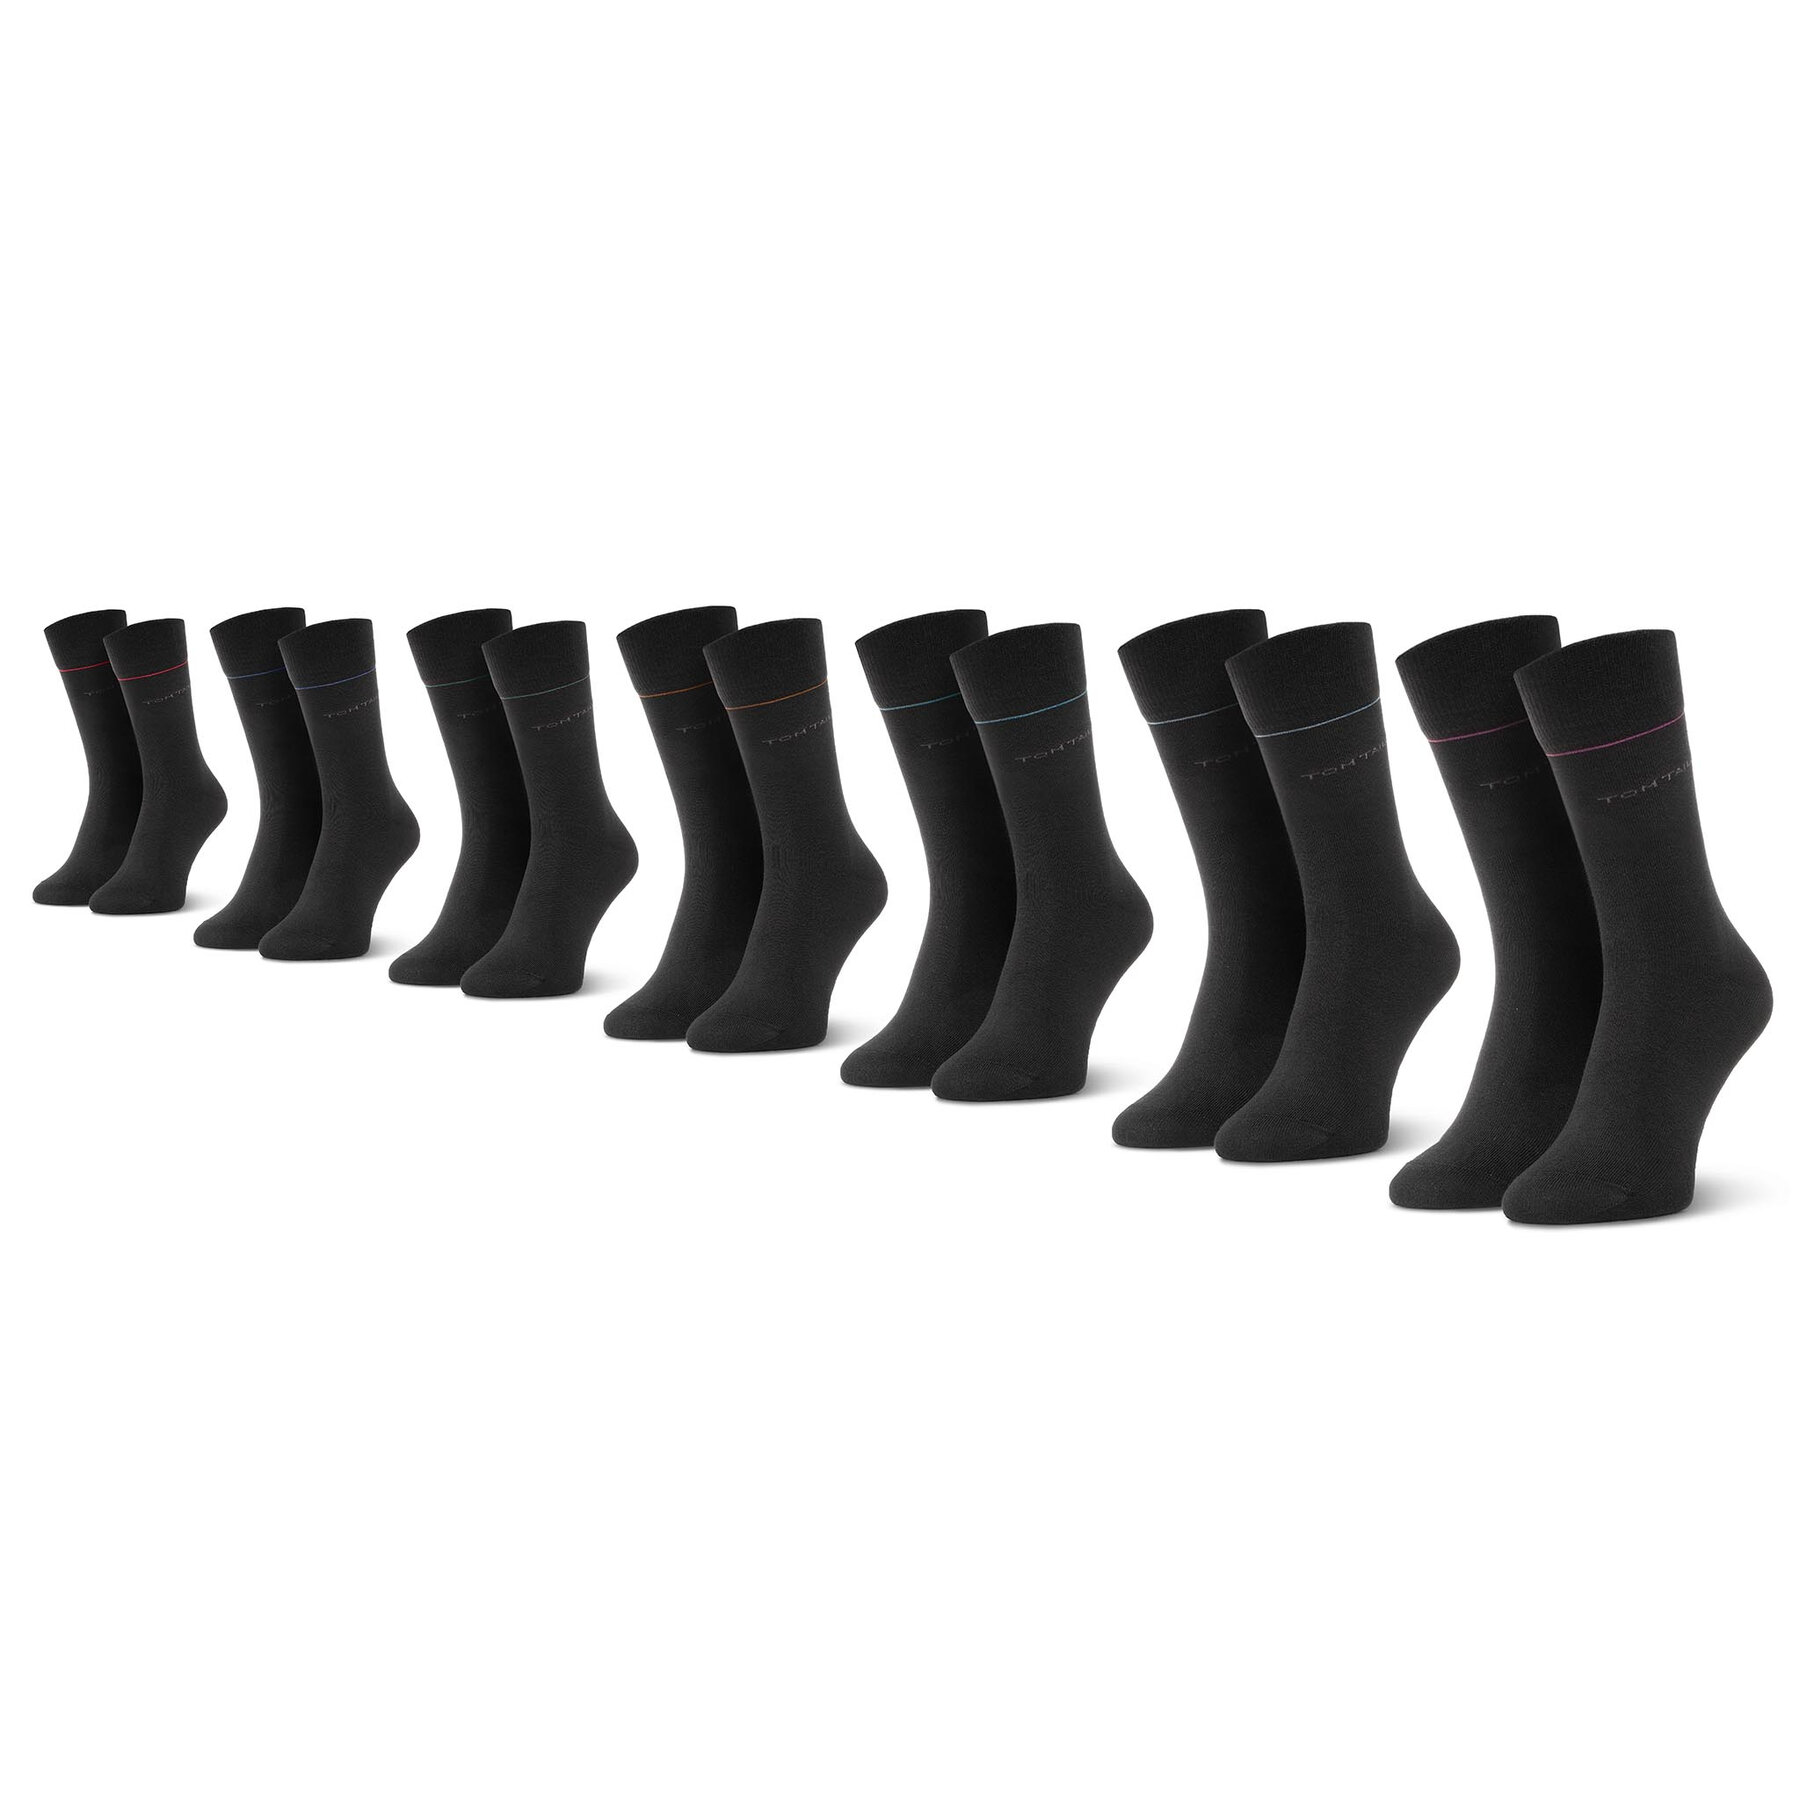 7er-Set hohe Unisex-Socken Tom Tailor 9997 Black 610 von Tom Tailor